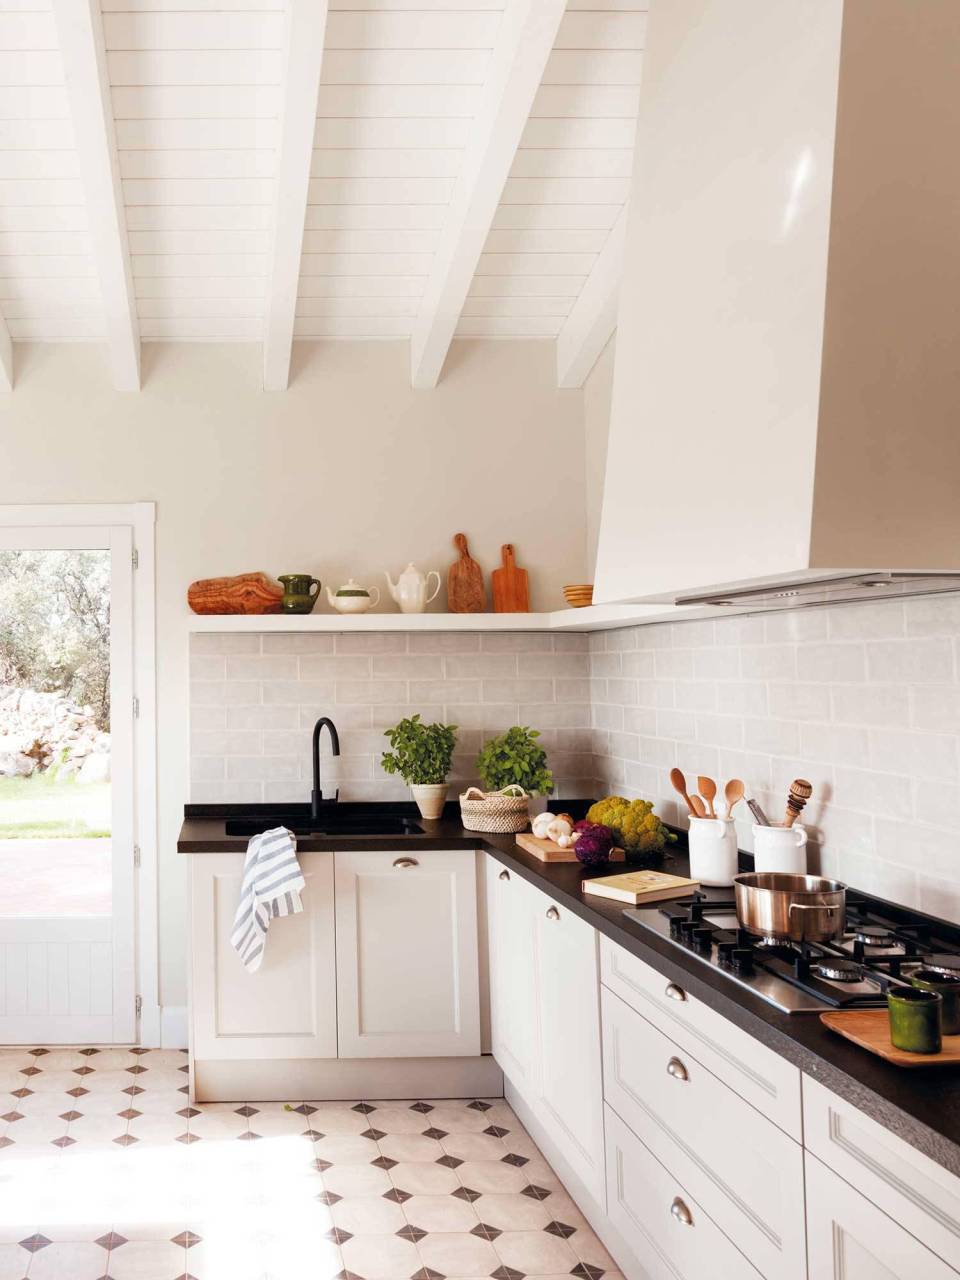 Sin muebles altos. La interiorista Helena Puig dice: “A la hora de proyectar una cocina, cada vez es más frecuente prescindir de la parte superior de almacenaje. Contribuye a crear espacios menos recargados, más limpios y despejados”.